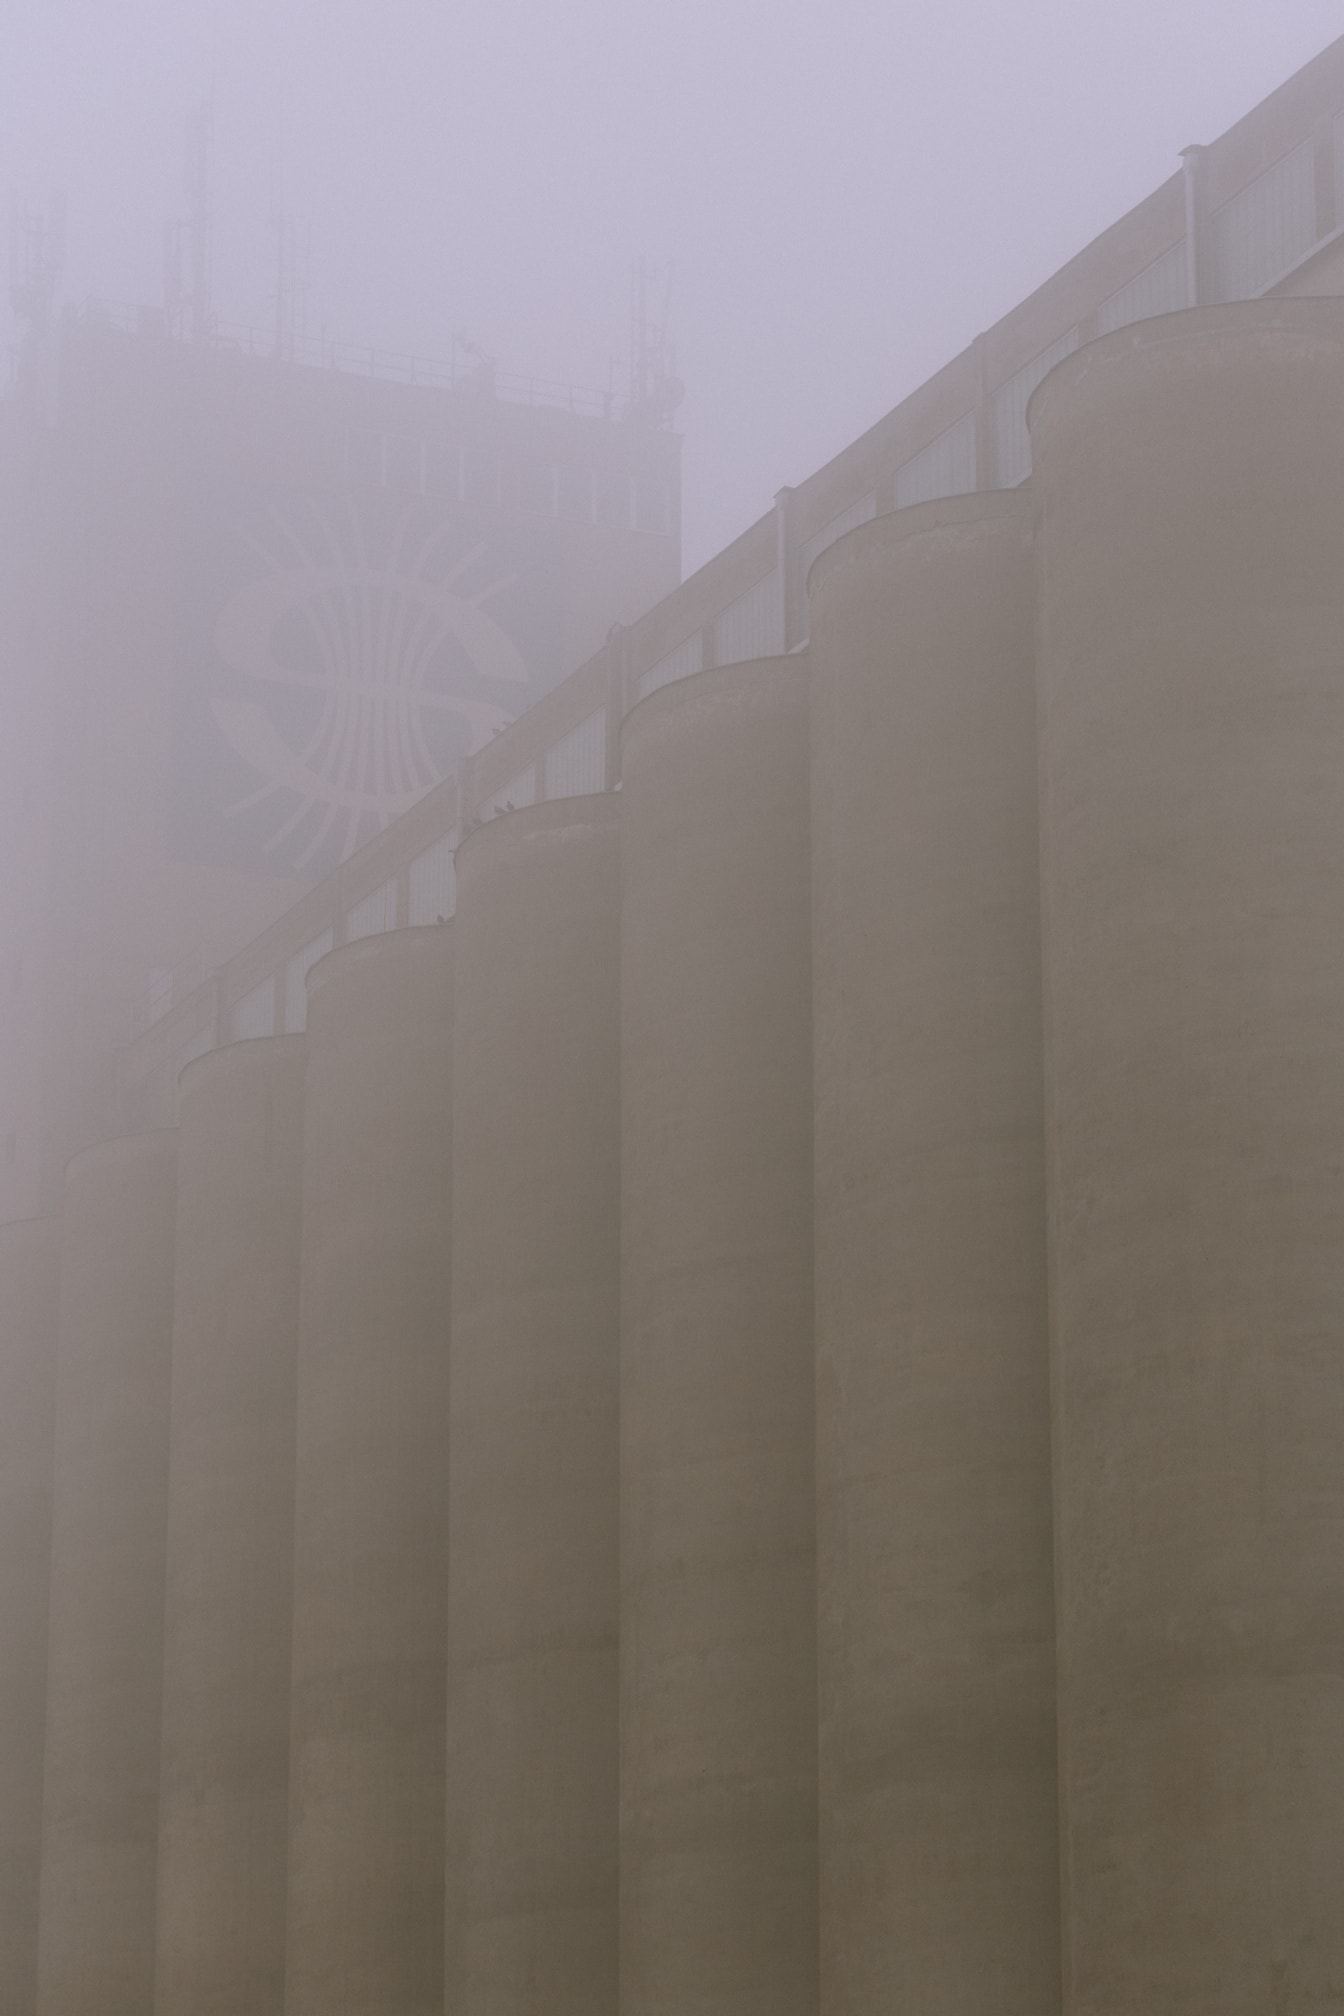 Yoğun siste sosyalist mimari tarzda uzun beton silo binası